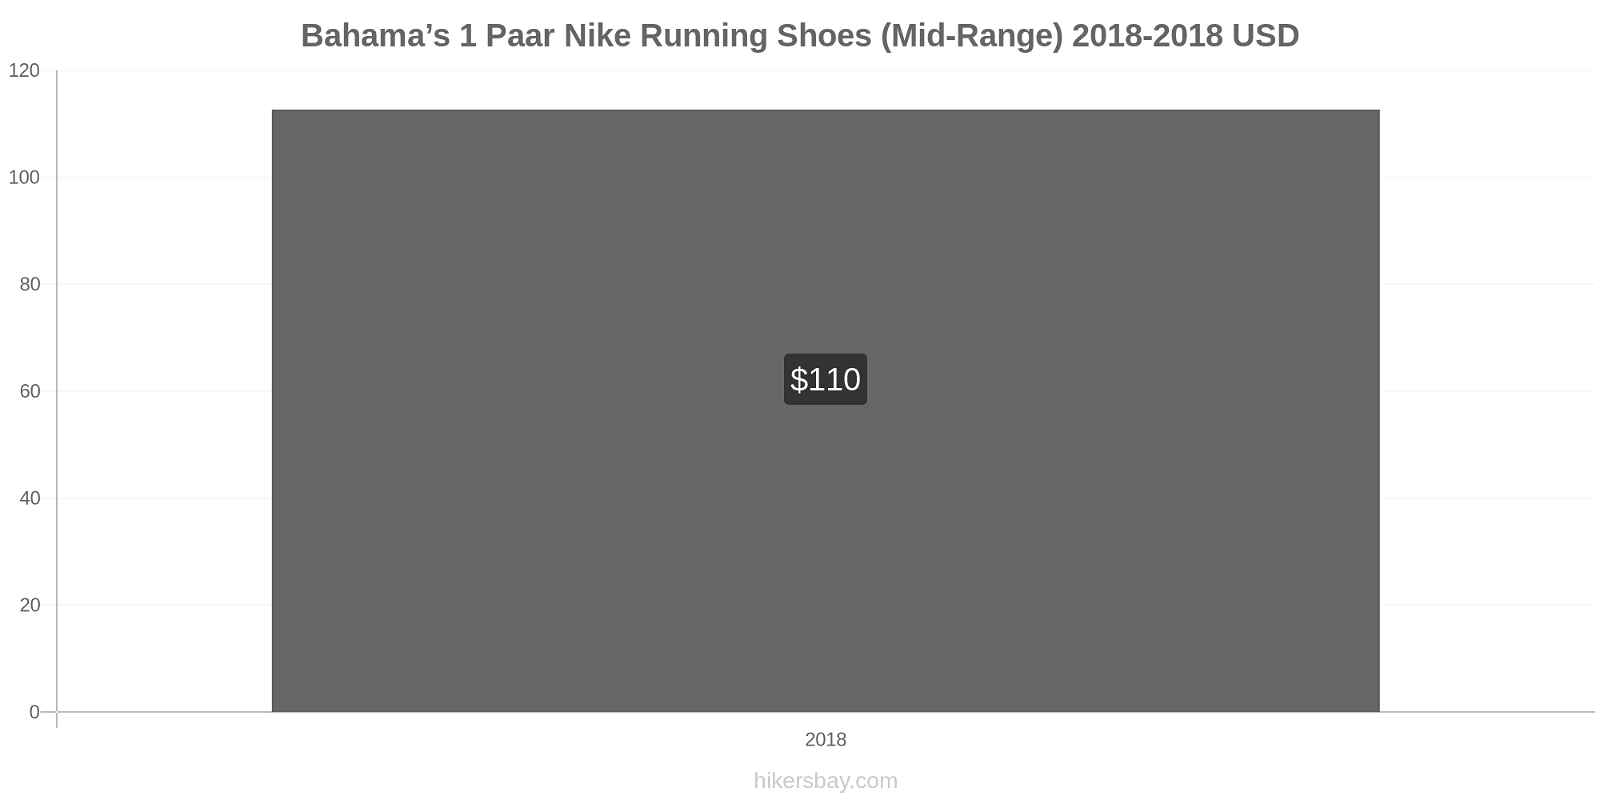 Bahama’s prijswijzigingen 1 paar Nike hardloopschoenen (uit de middenklasse) hikersbay.com